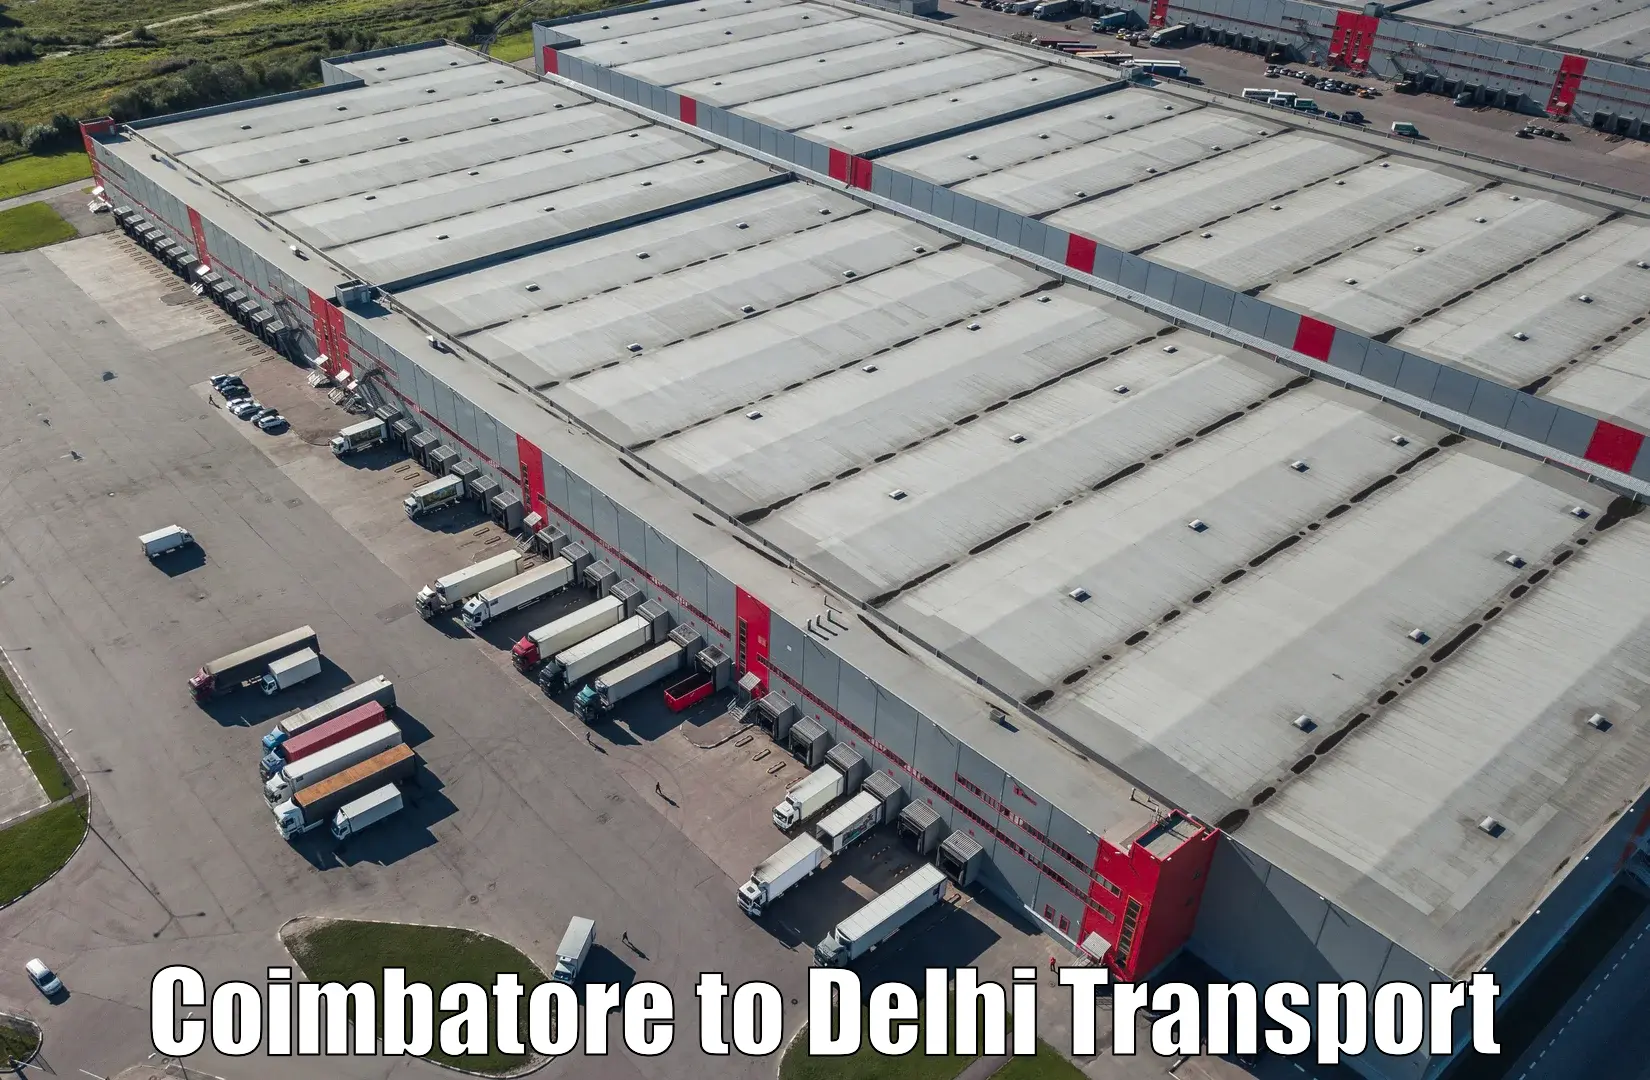 Furniture transport service Coimbatore to Delhi